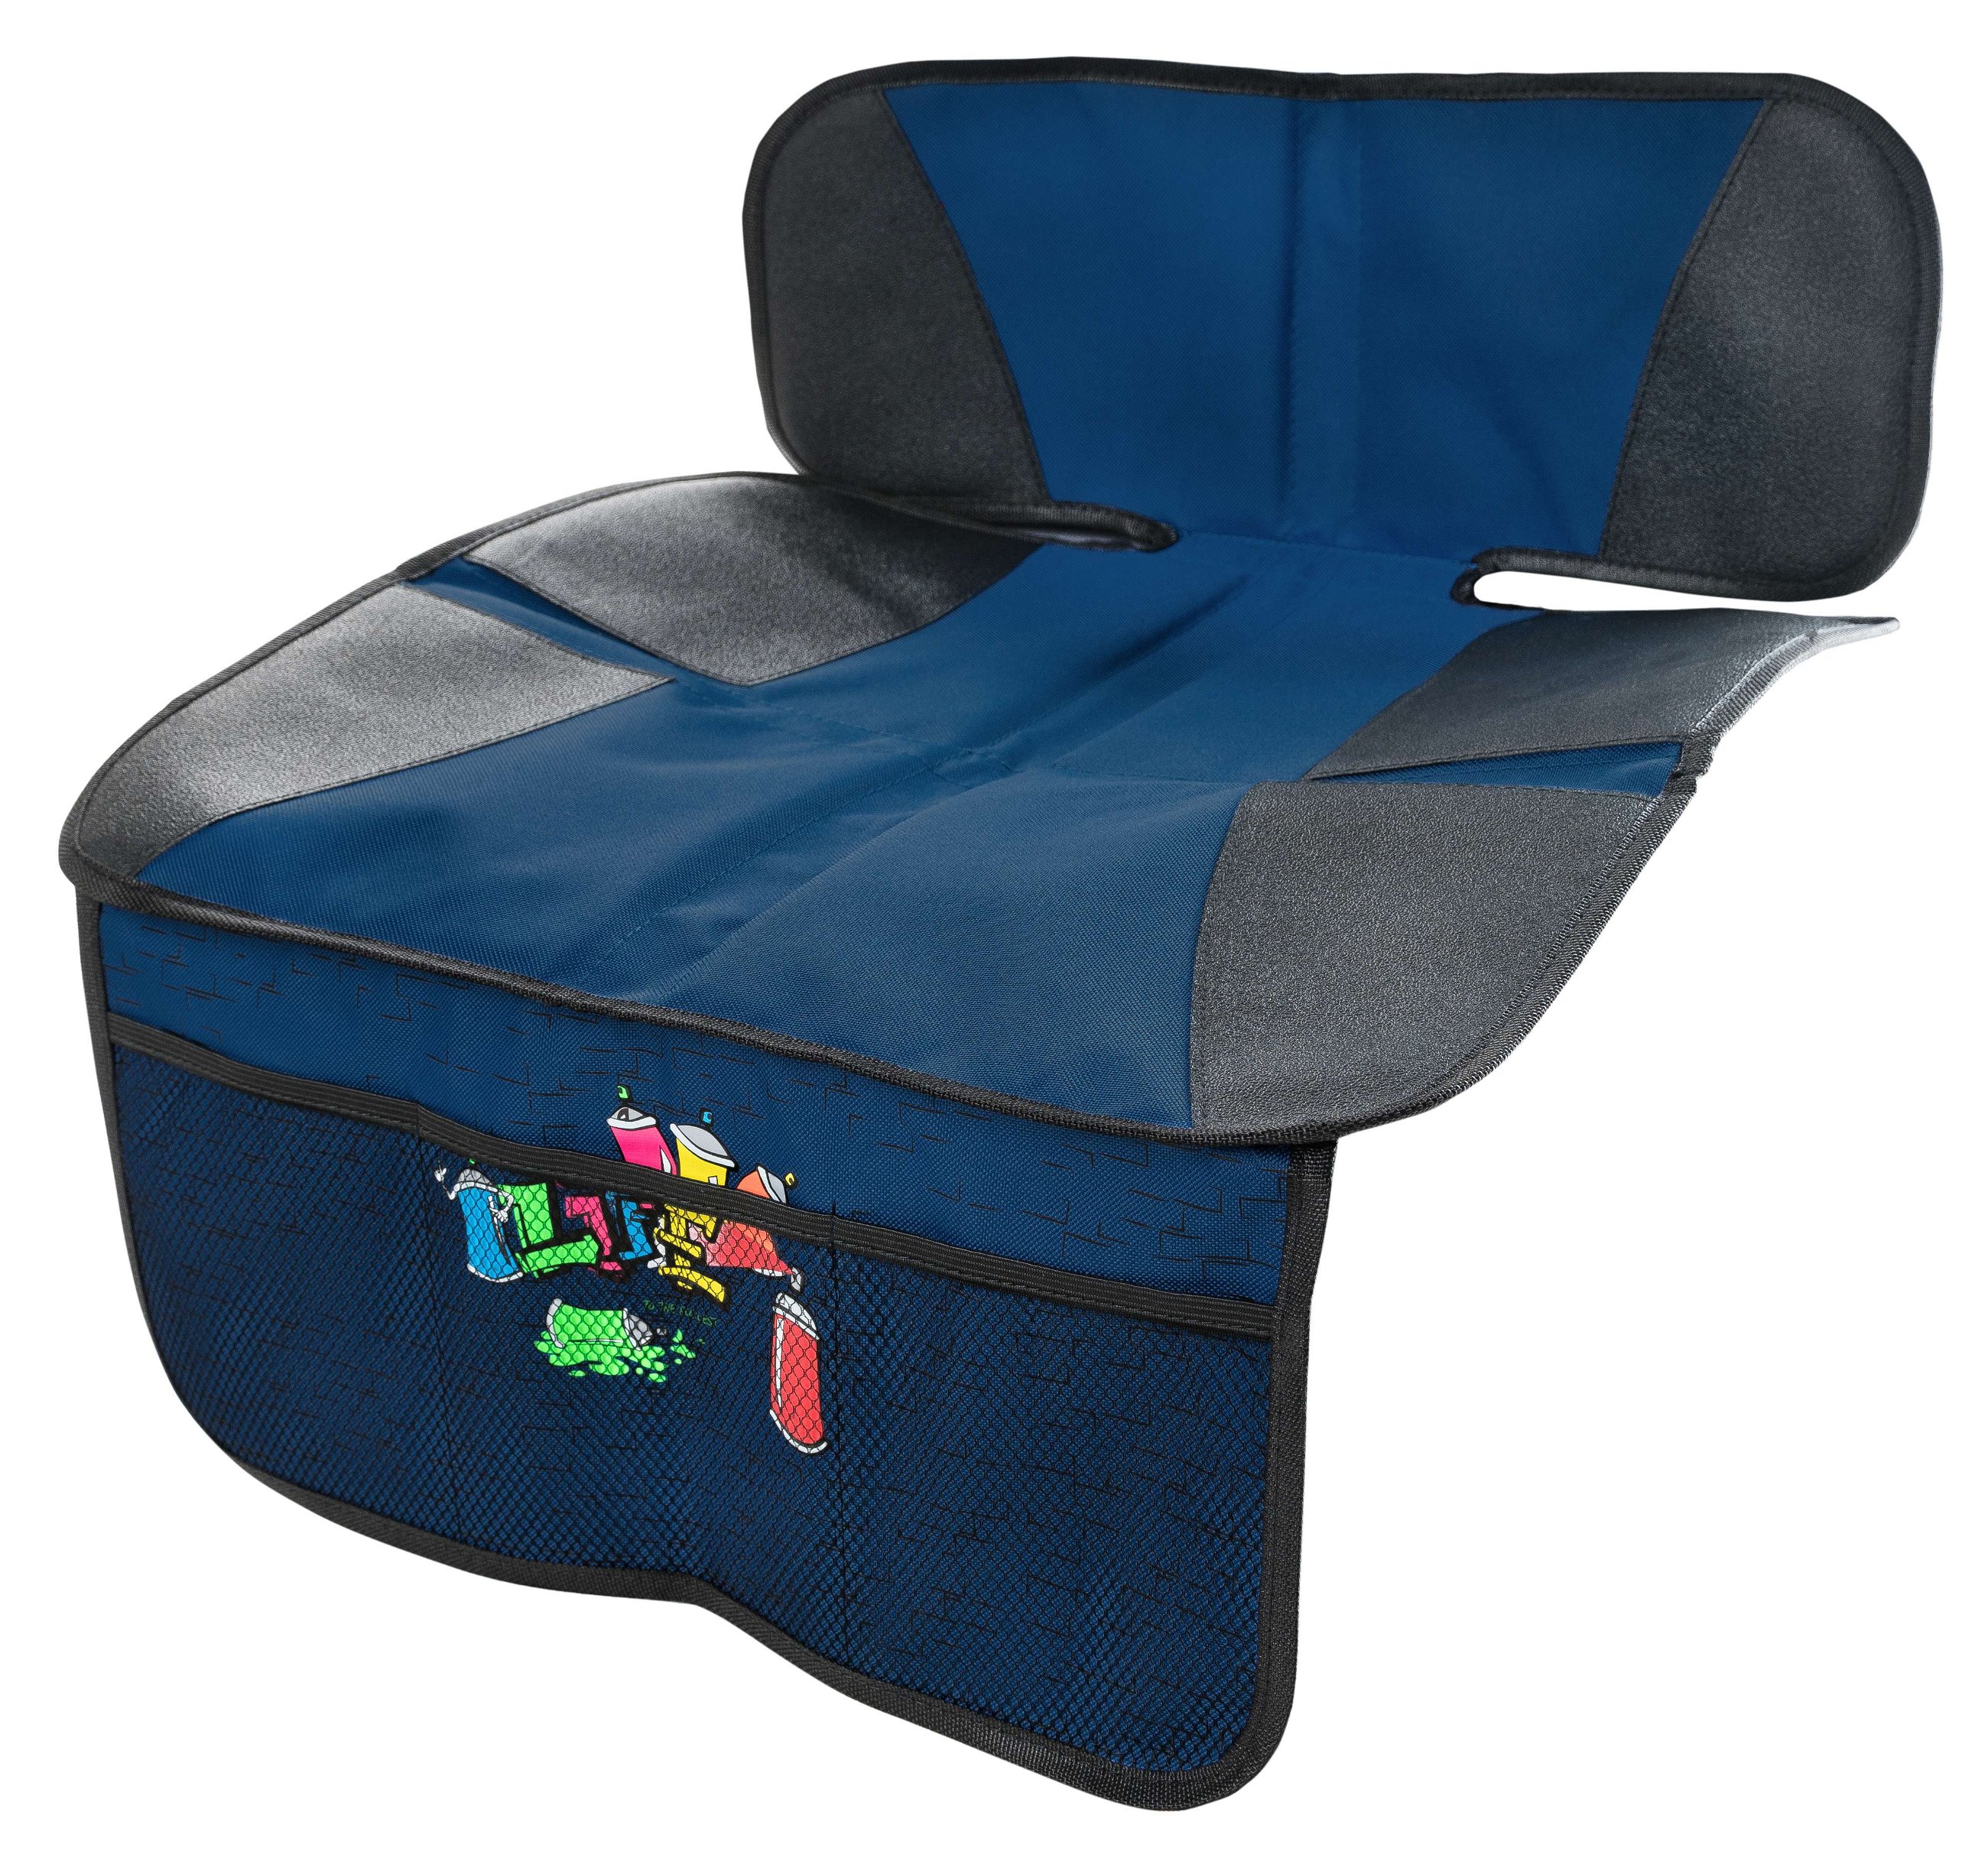 Coussin pour siège enfant Graffiti, tapis de protection pour siège enfant bleu